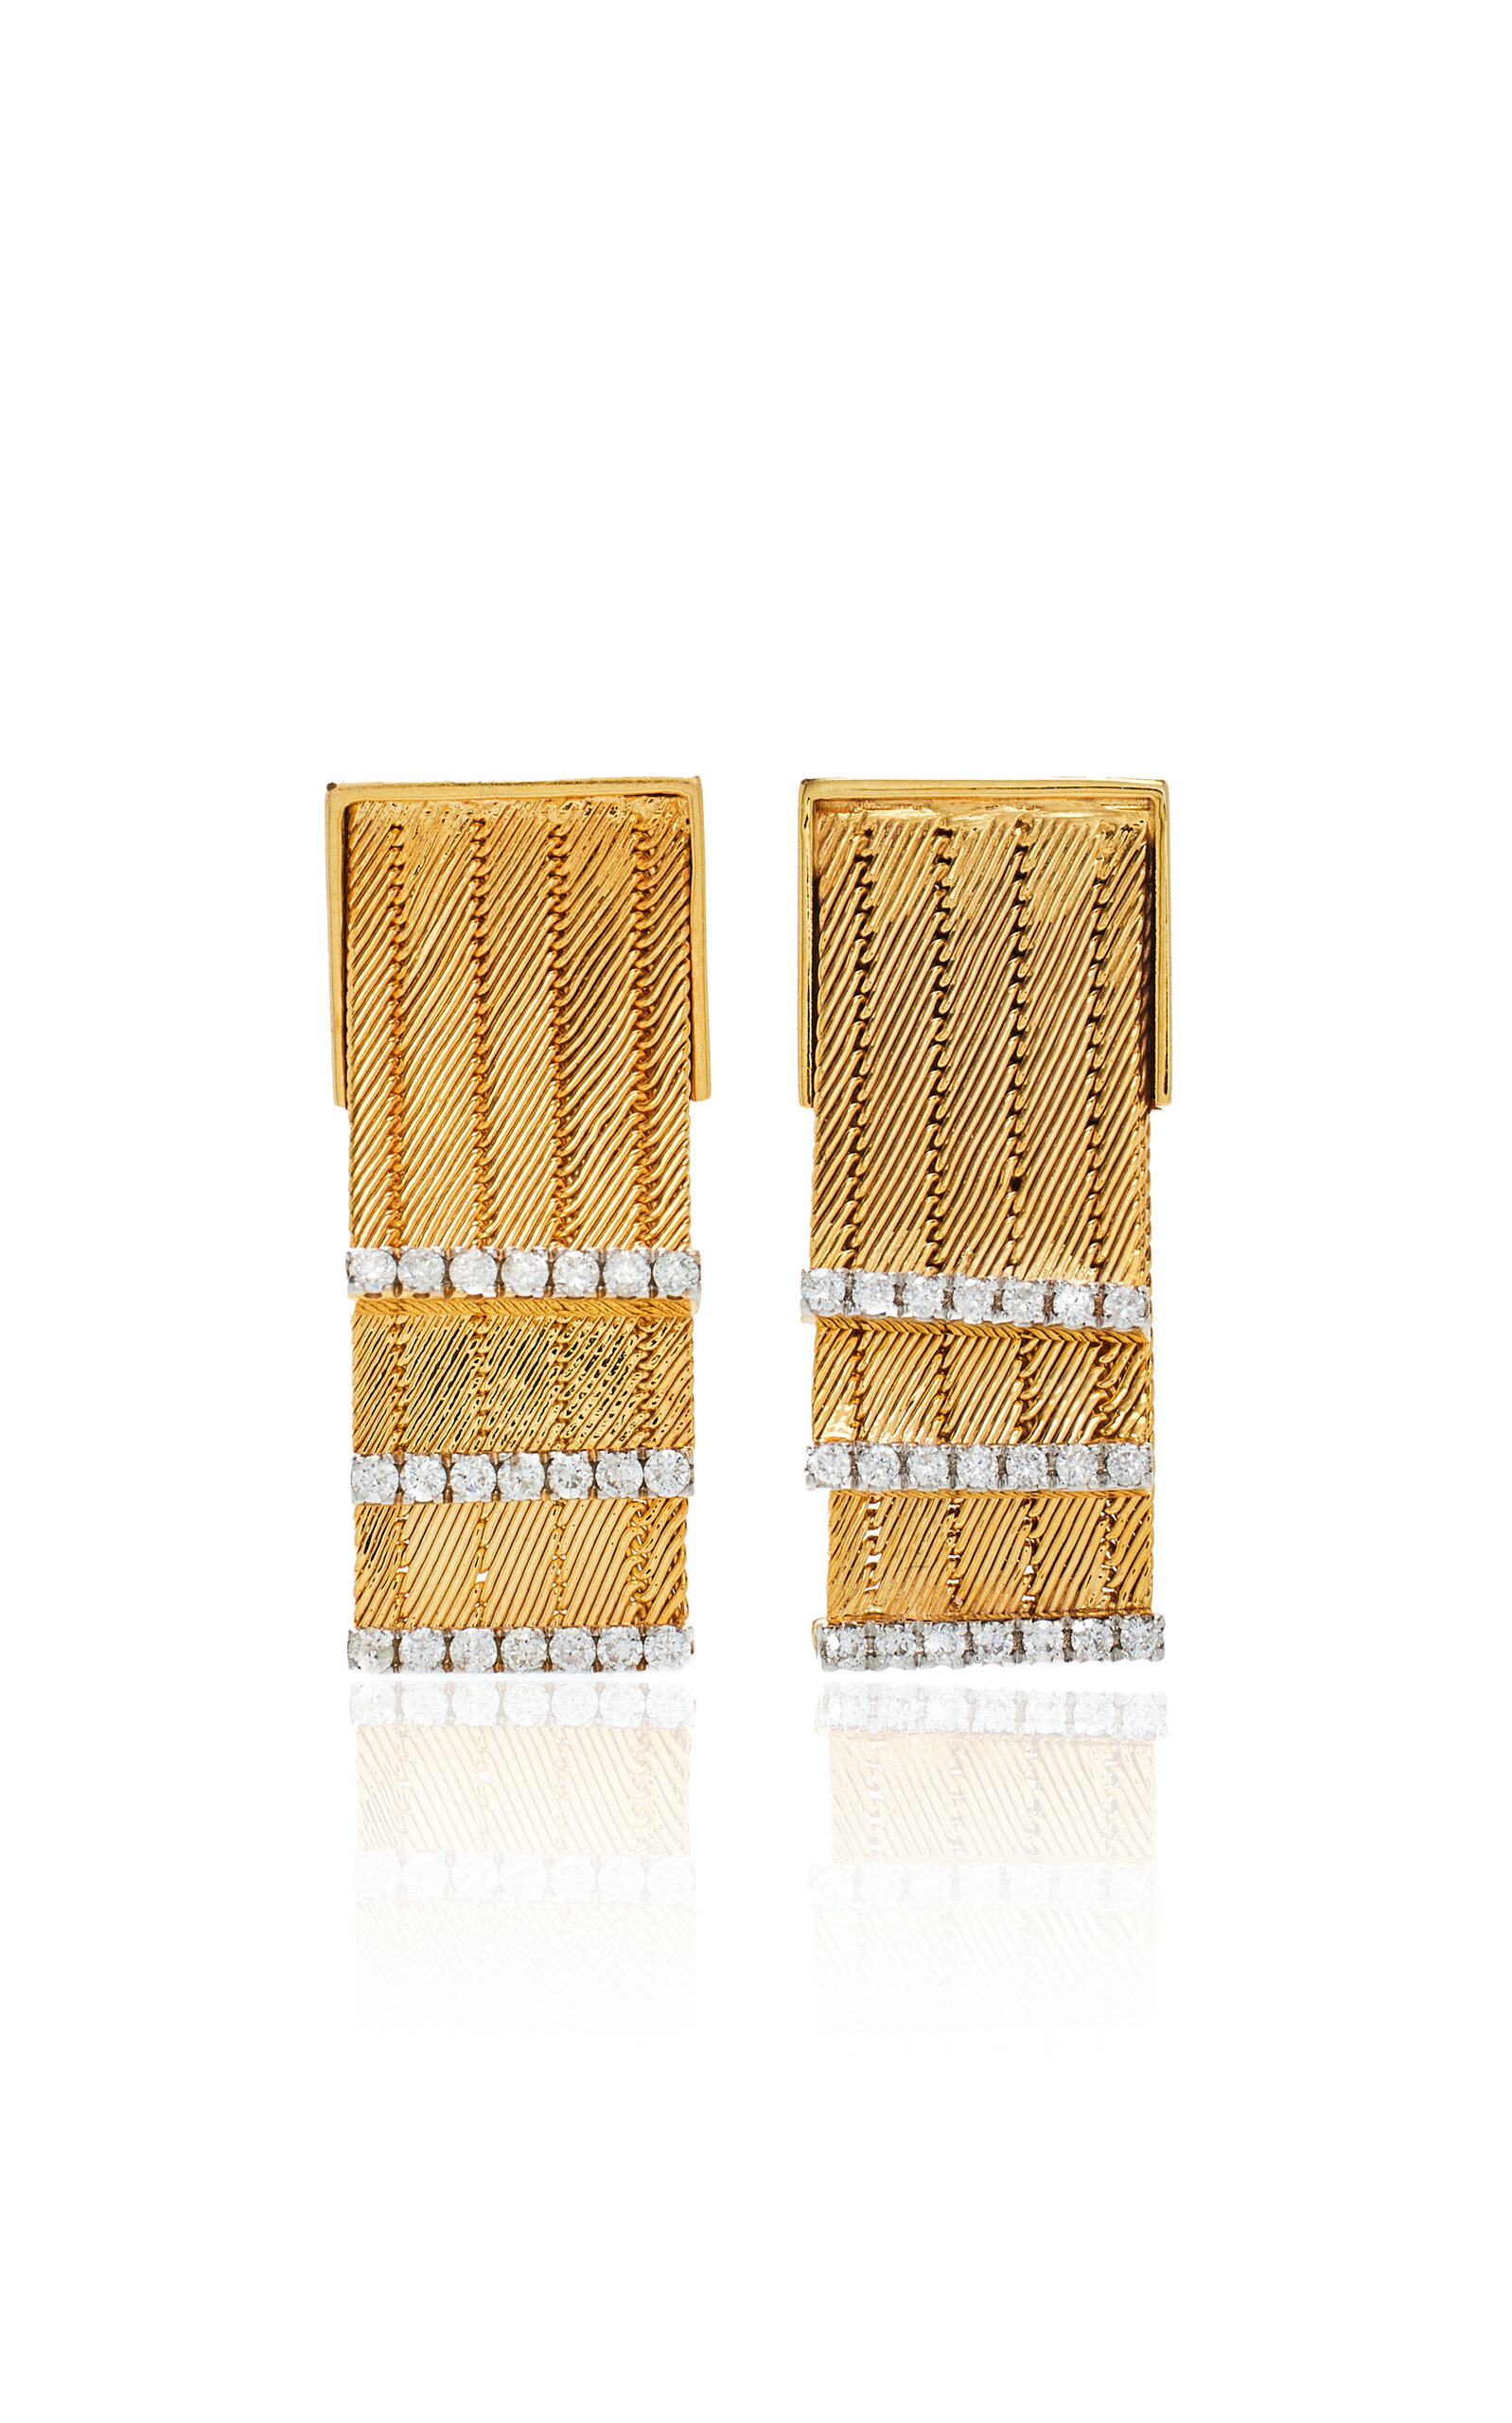 Her Story Women's Feuille 14k Yellow Gold Diamond Earrings